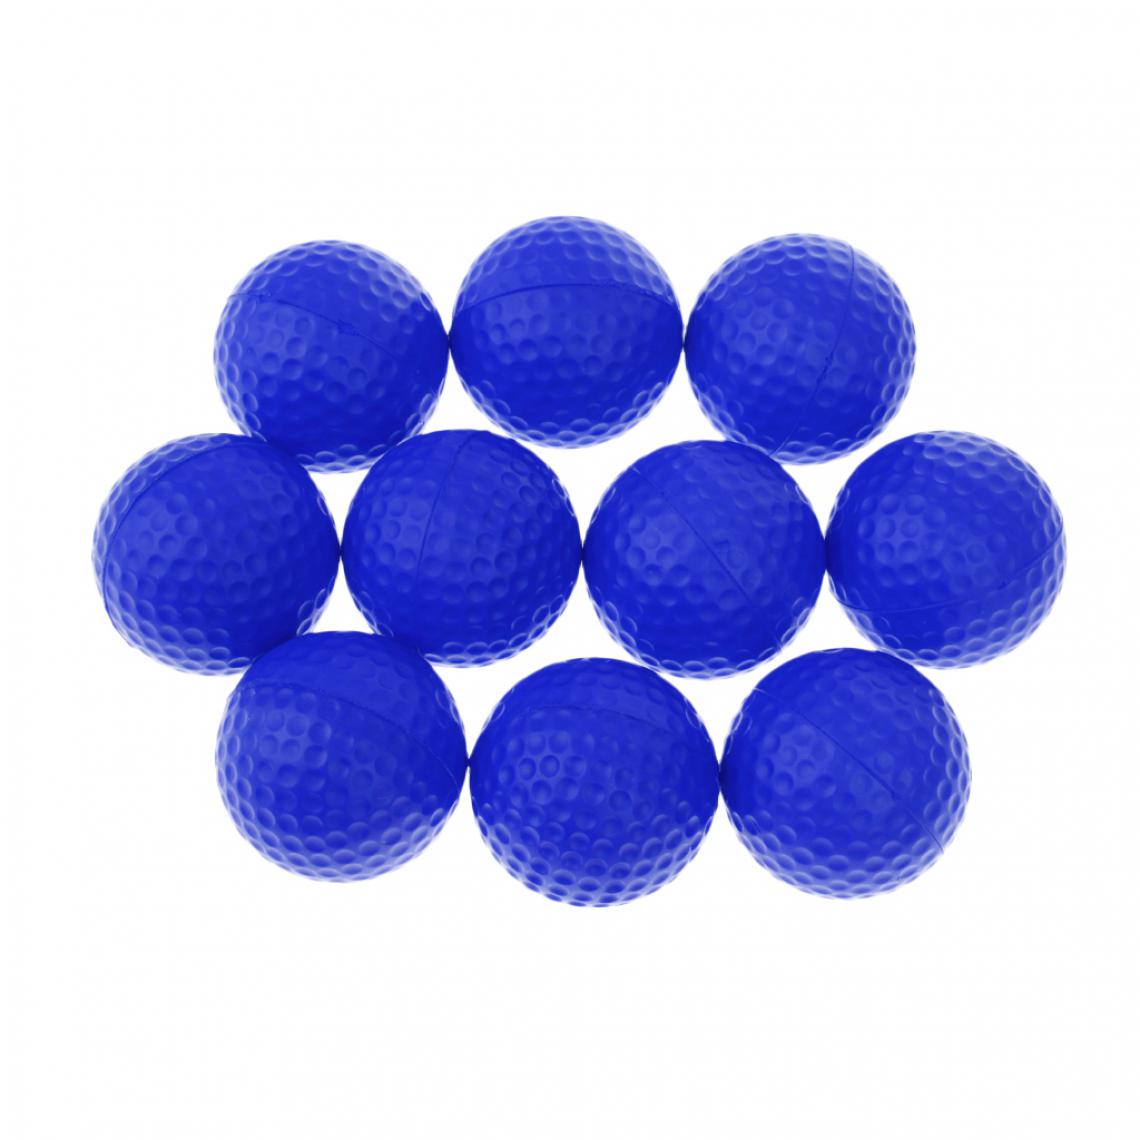 marque generique - 10 pièces PU Foam Sponge Golf Training Balles douces Golf Pratique Balles Vertes - Jeux de balles